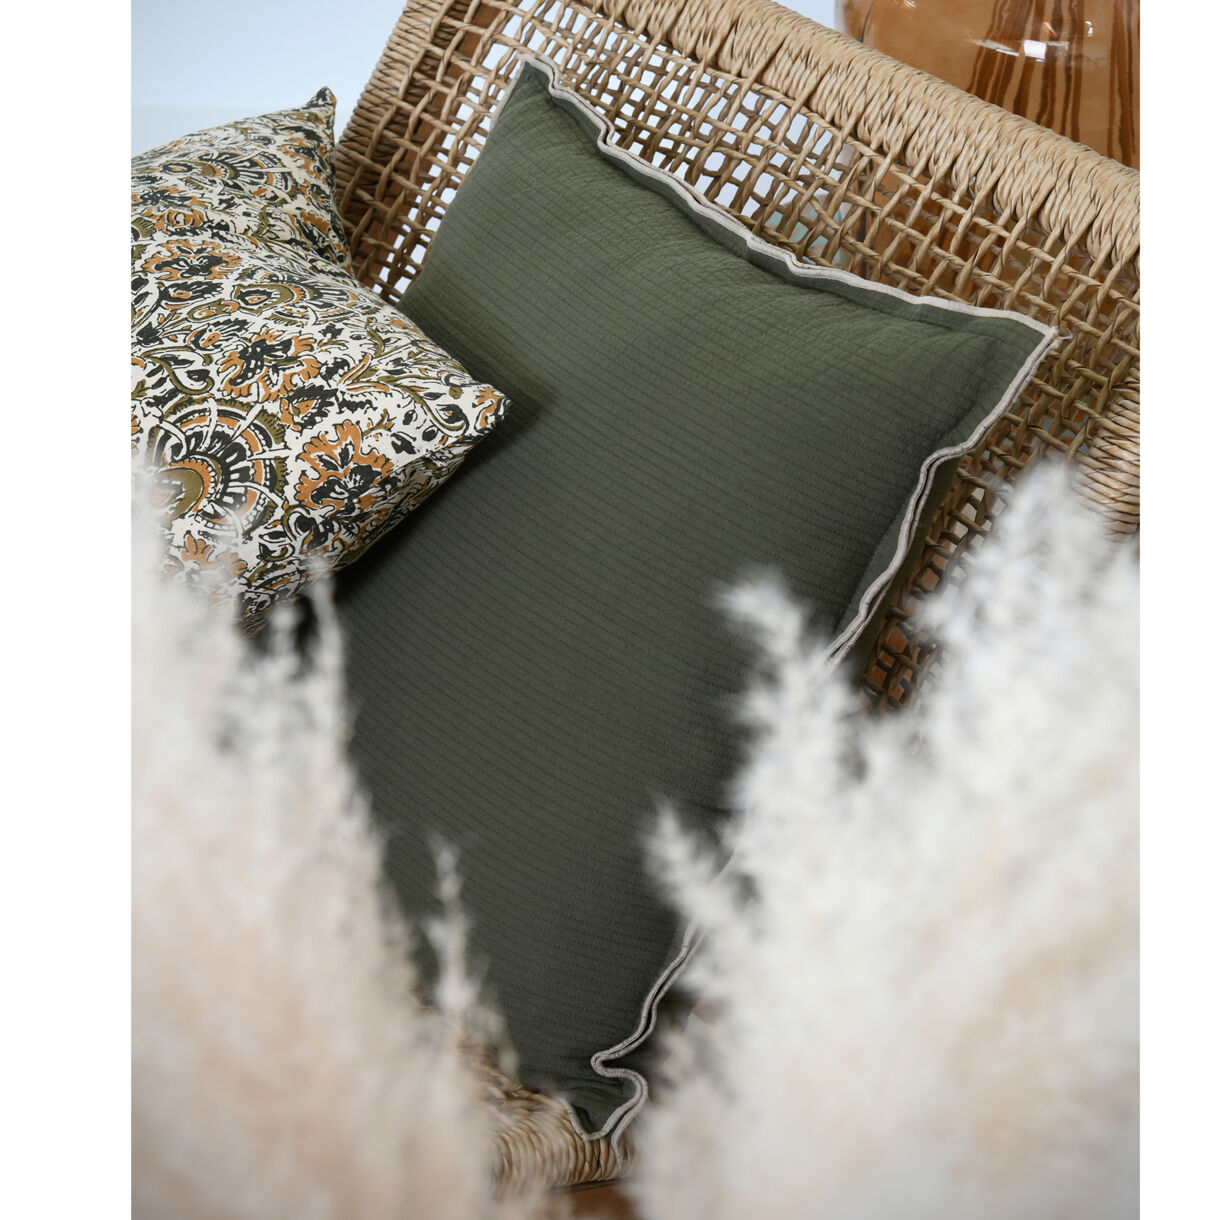 Cuscino quadrato di cotone (45 x 45 cm) Soleia Verde cachi